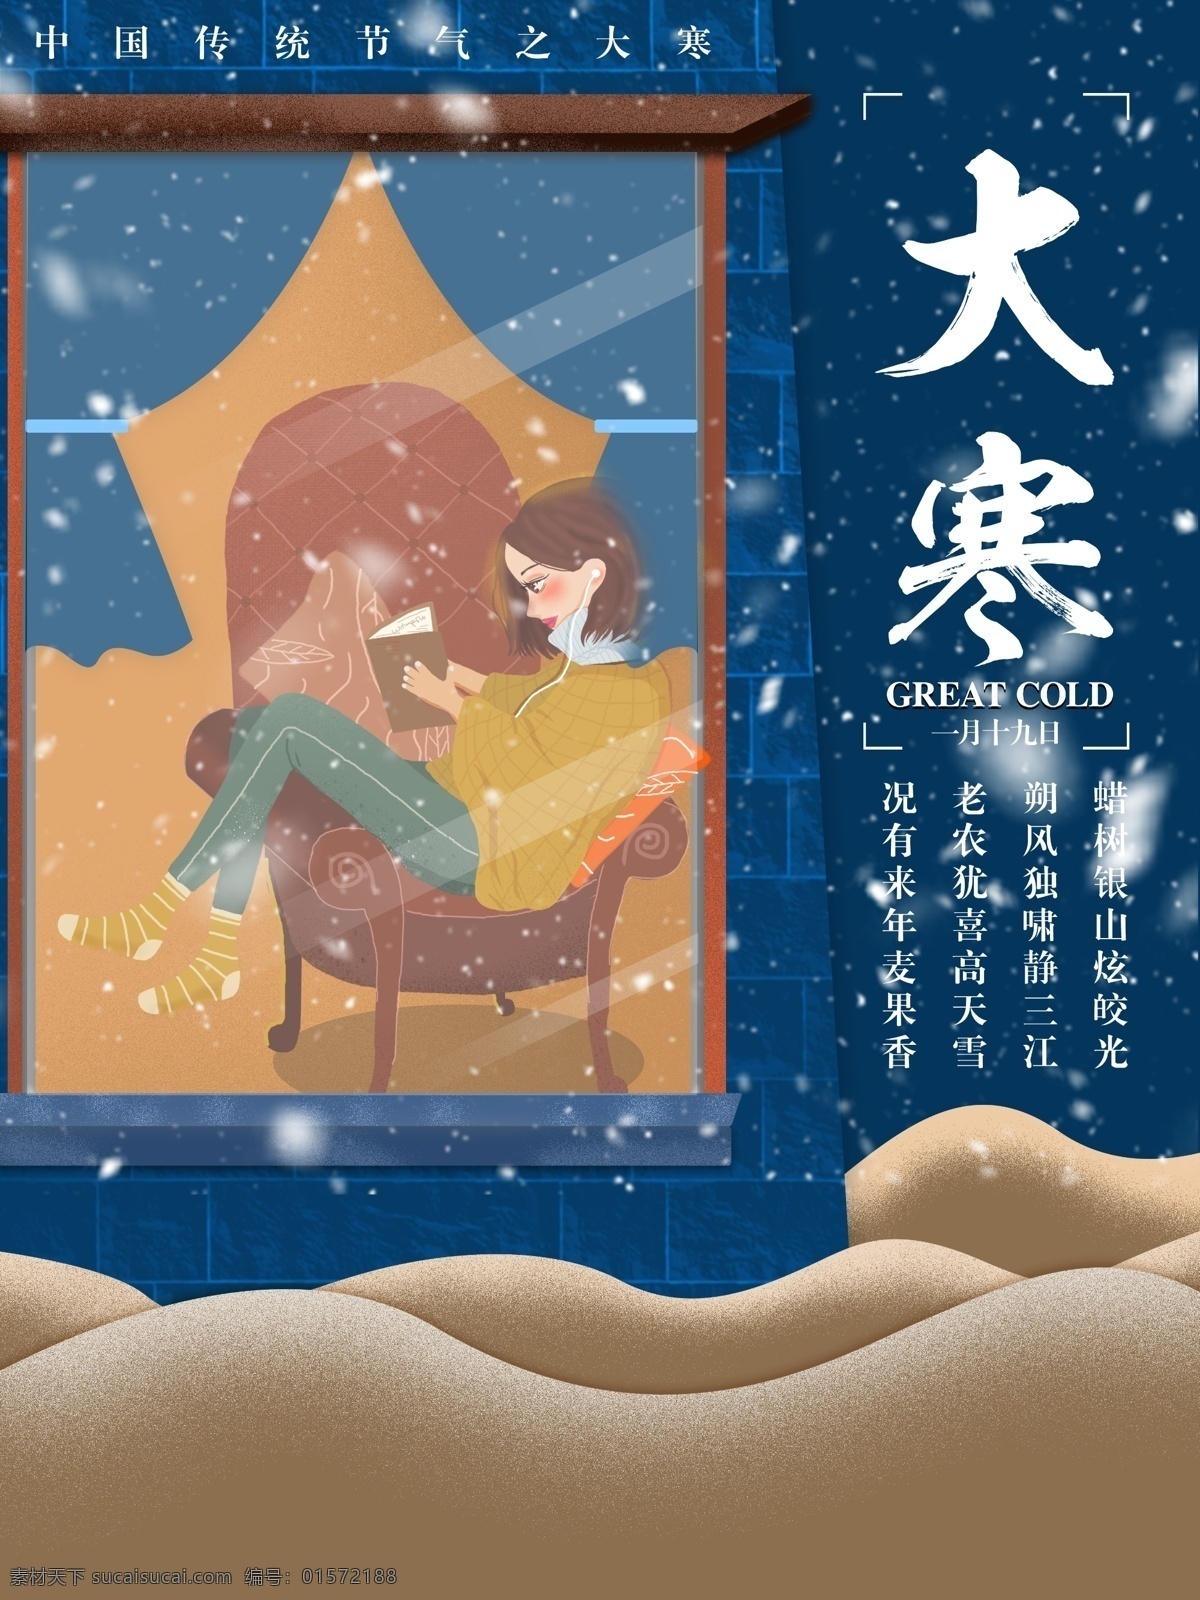 手绘 插画 传统 节气 大寒 节日 海报 蓝色 女孩 玻璃 看书 沙地 山 雪